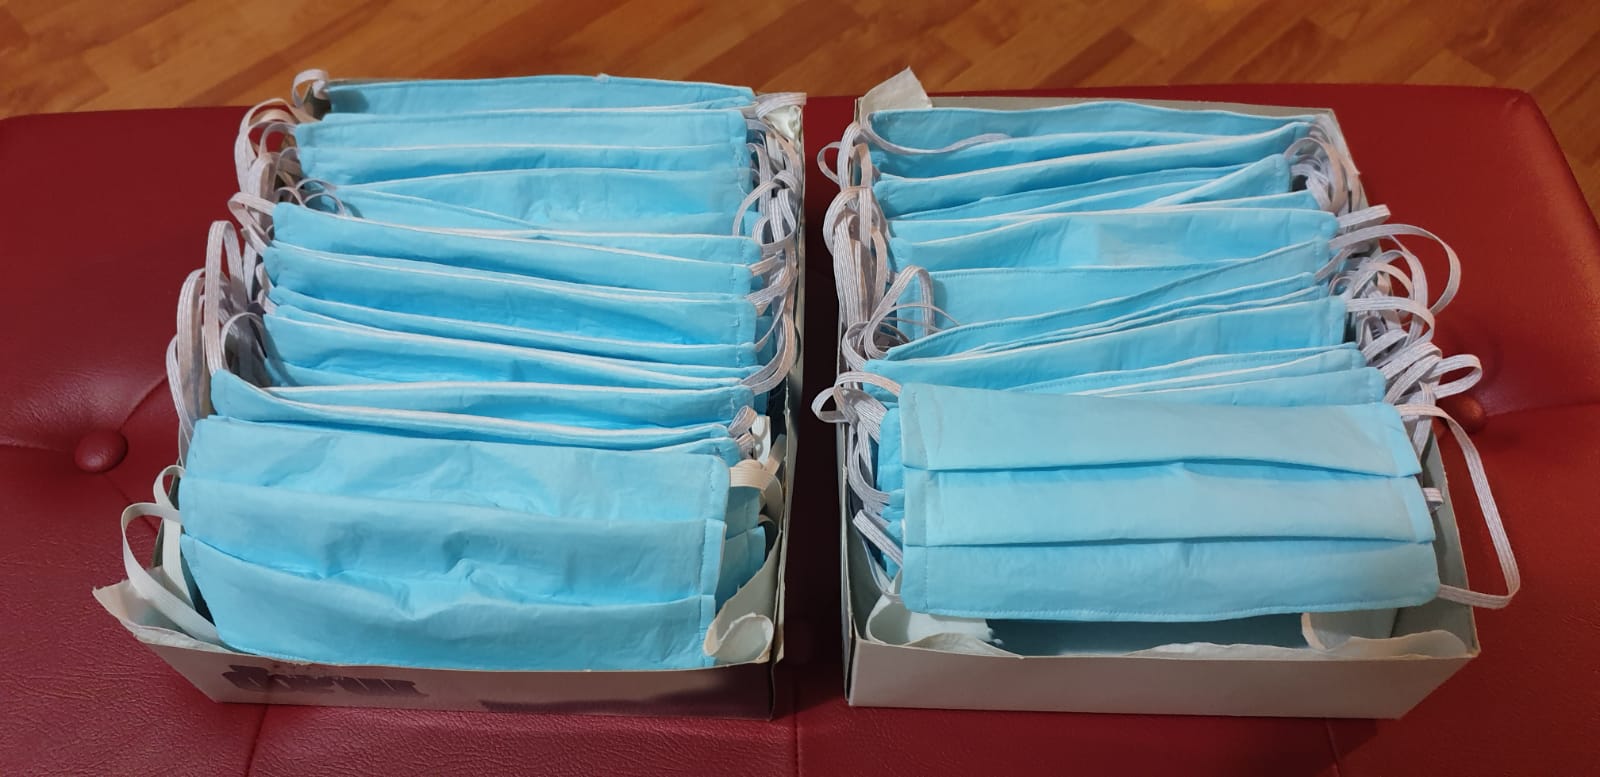 Alcune delle centinaia di mascherine protettive consegnate all'ospedale di Lanusei.